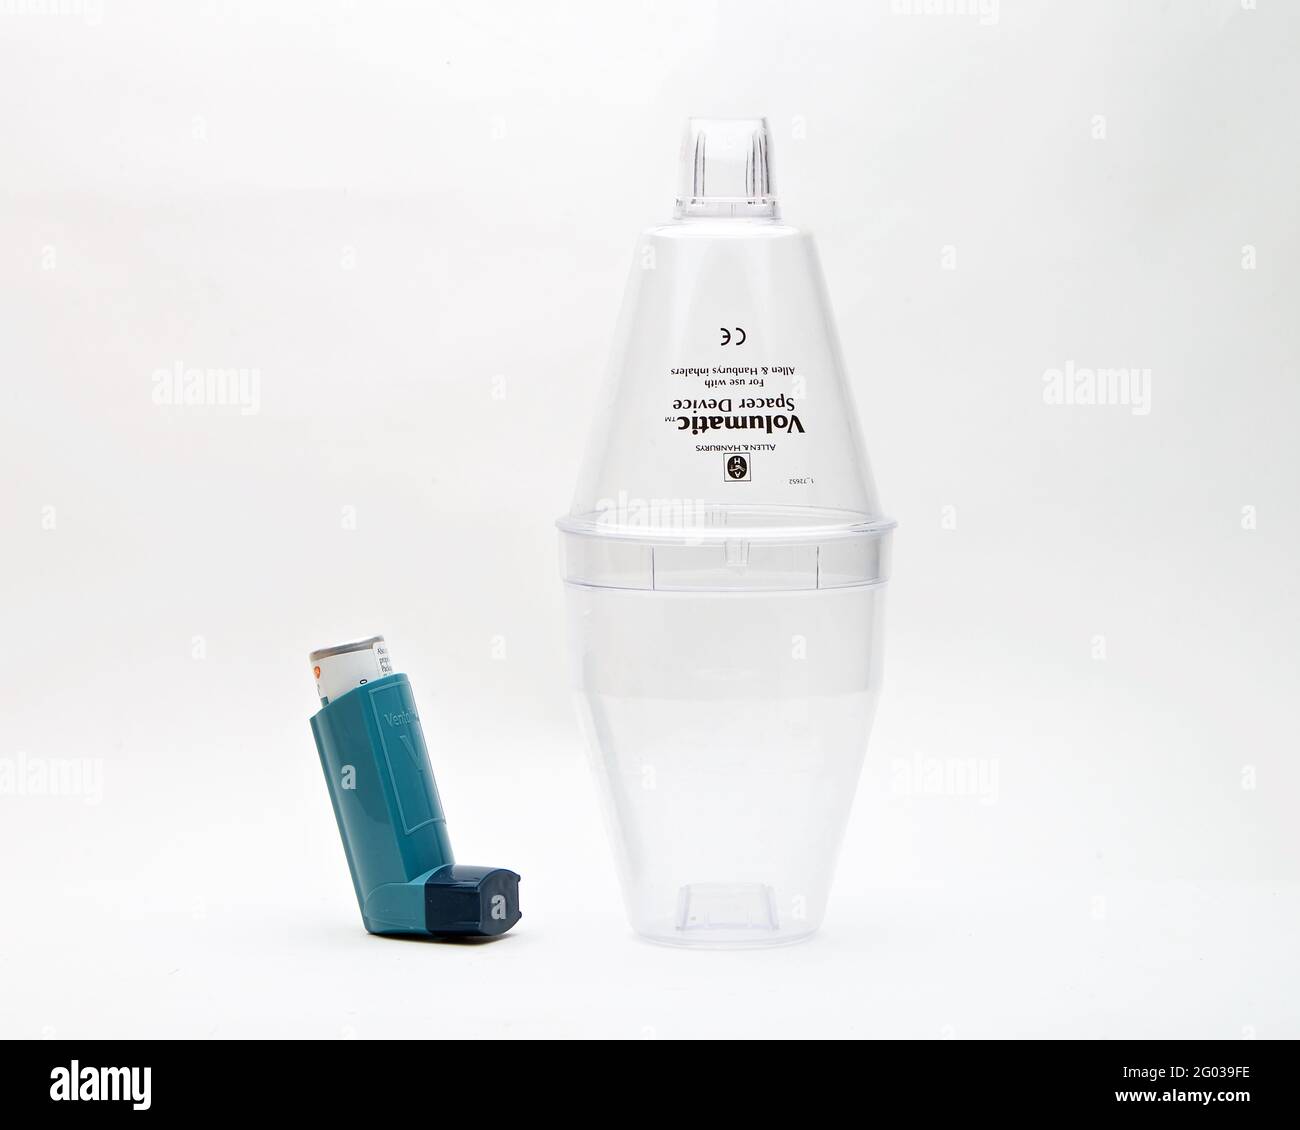 Inhalator gerät -Fotos und -Bildmaterial in hoher Auflösung – Alamy